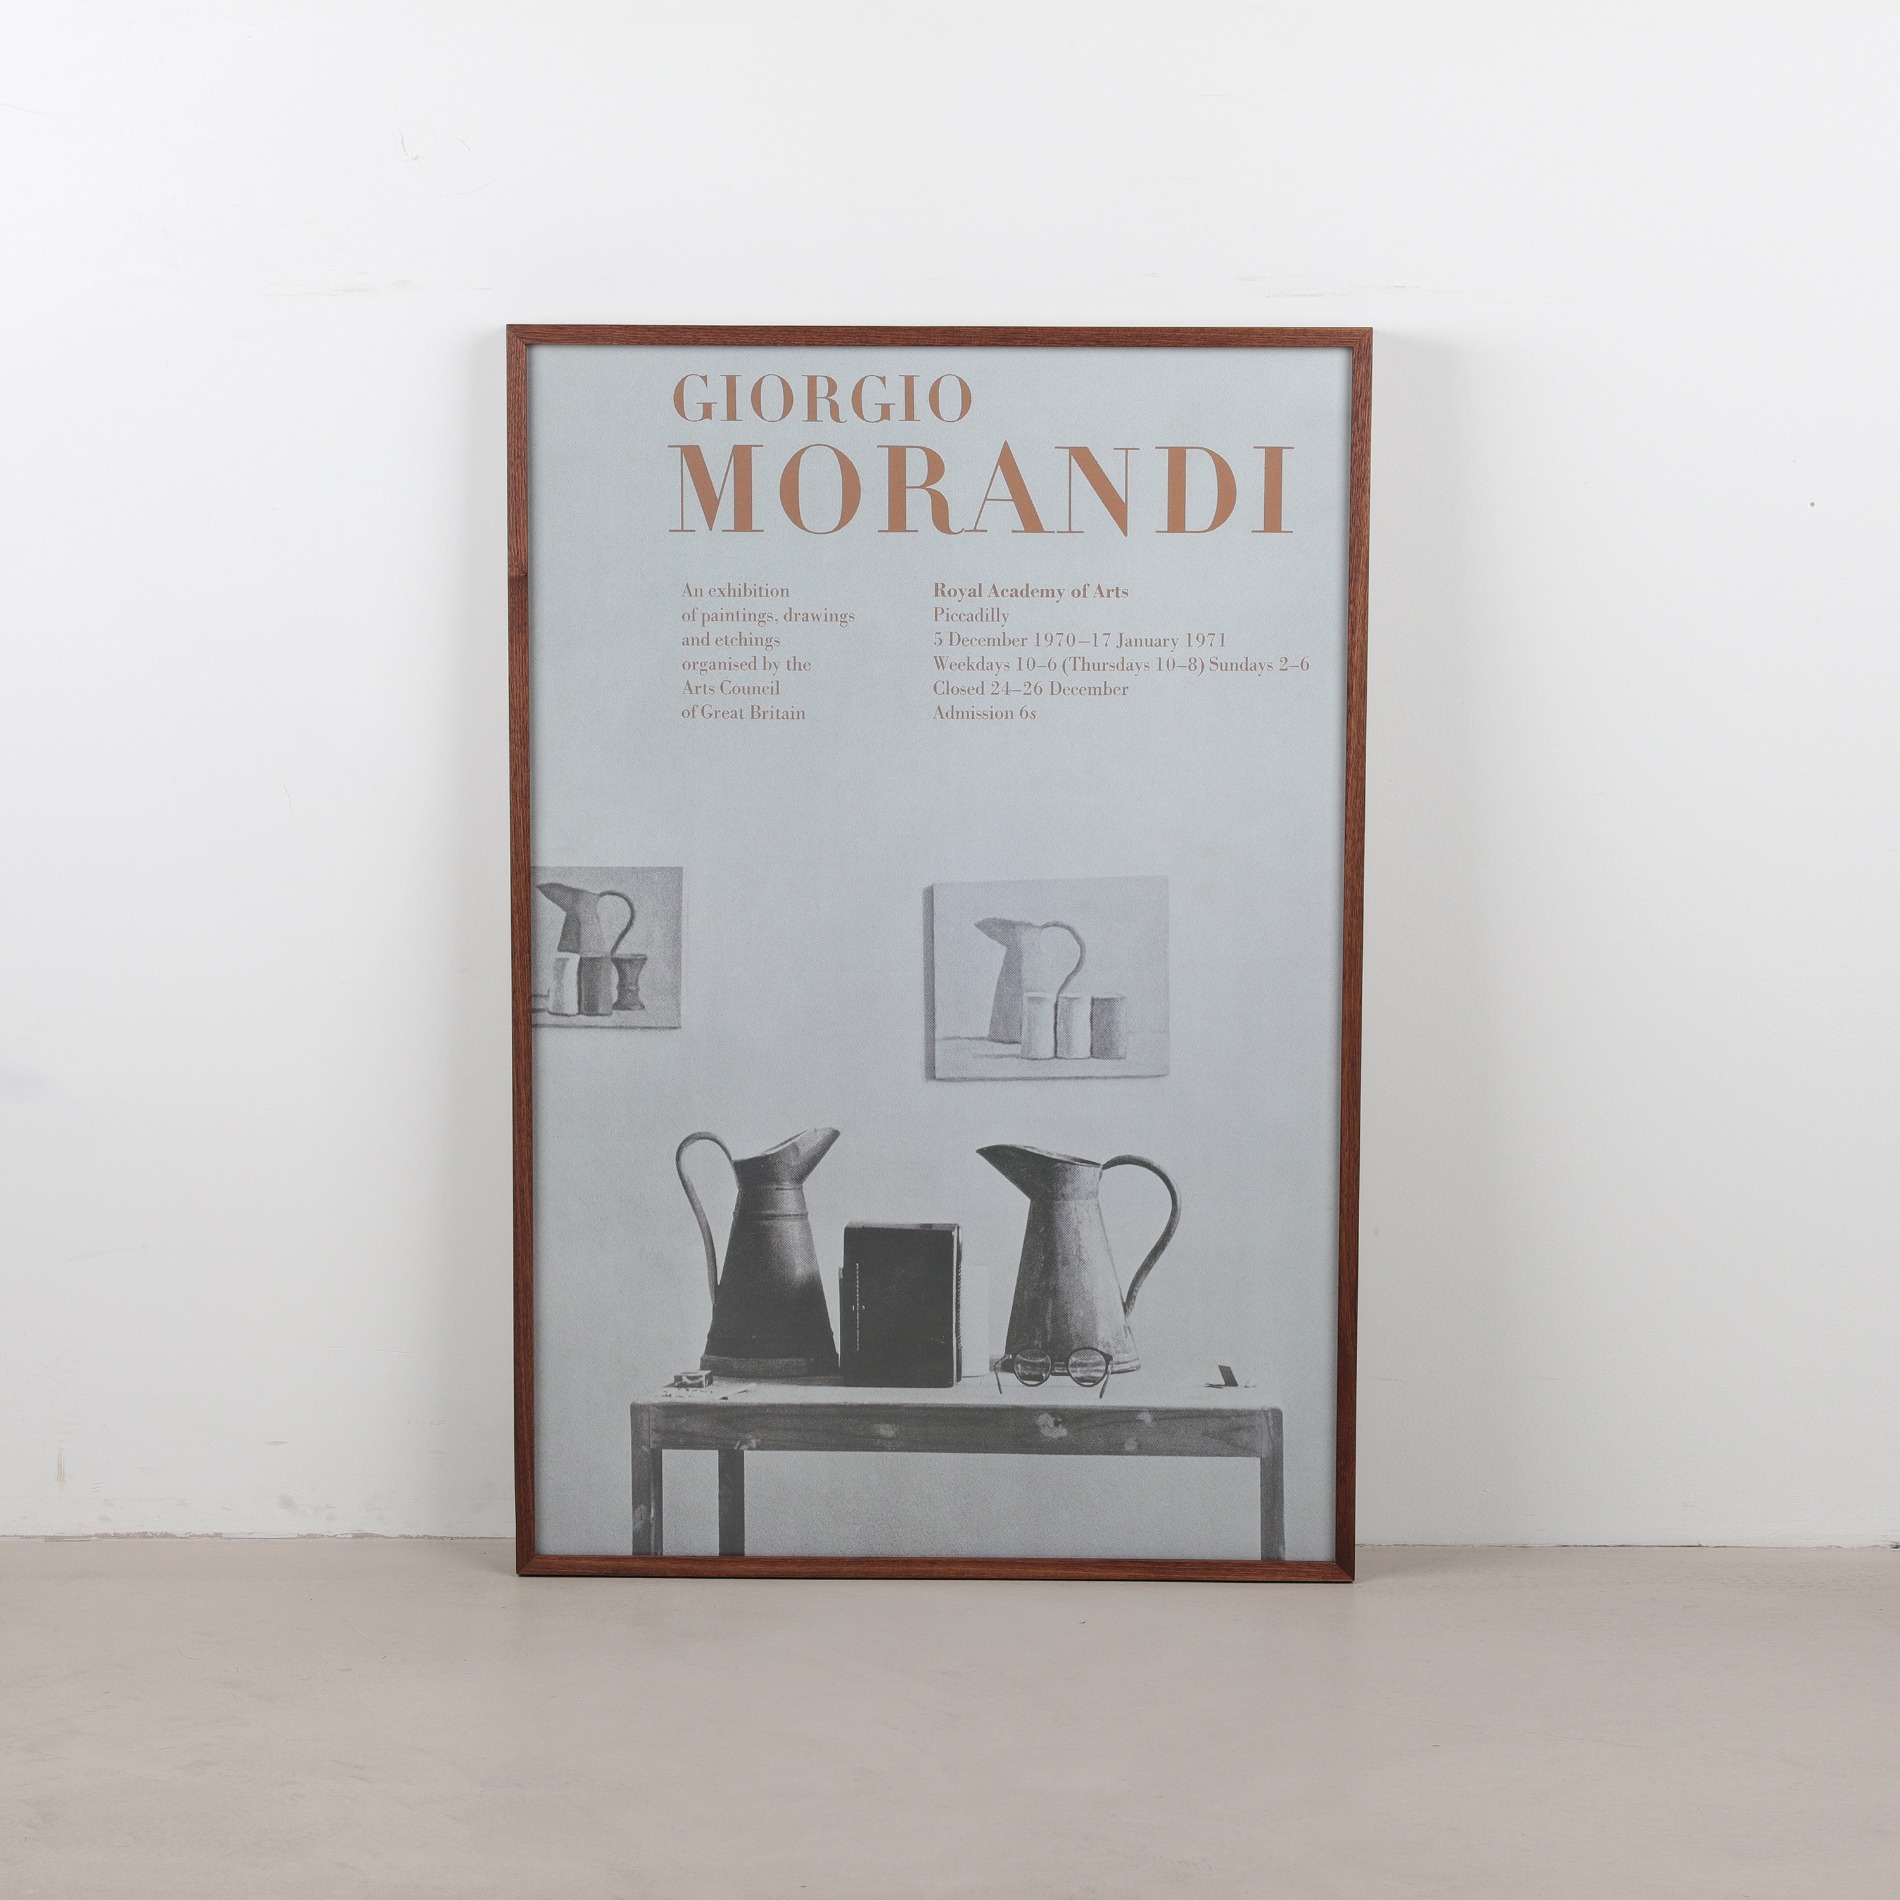 [조르조 모란디] Giorgio Morandi, 1970-71 (액자포함)